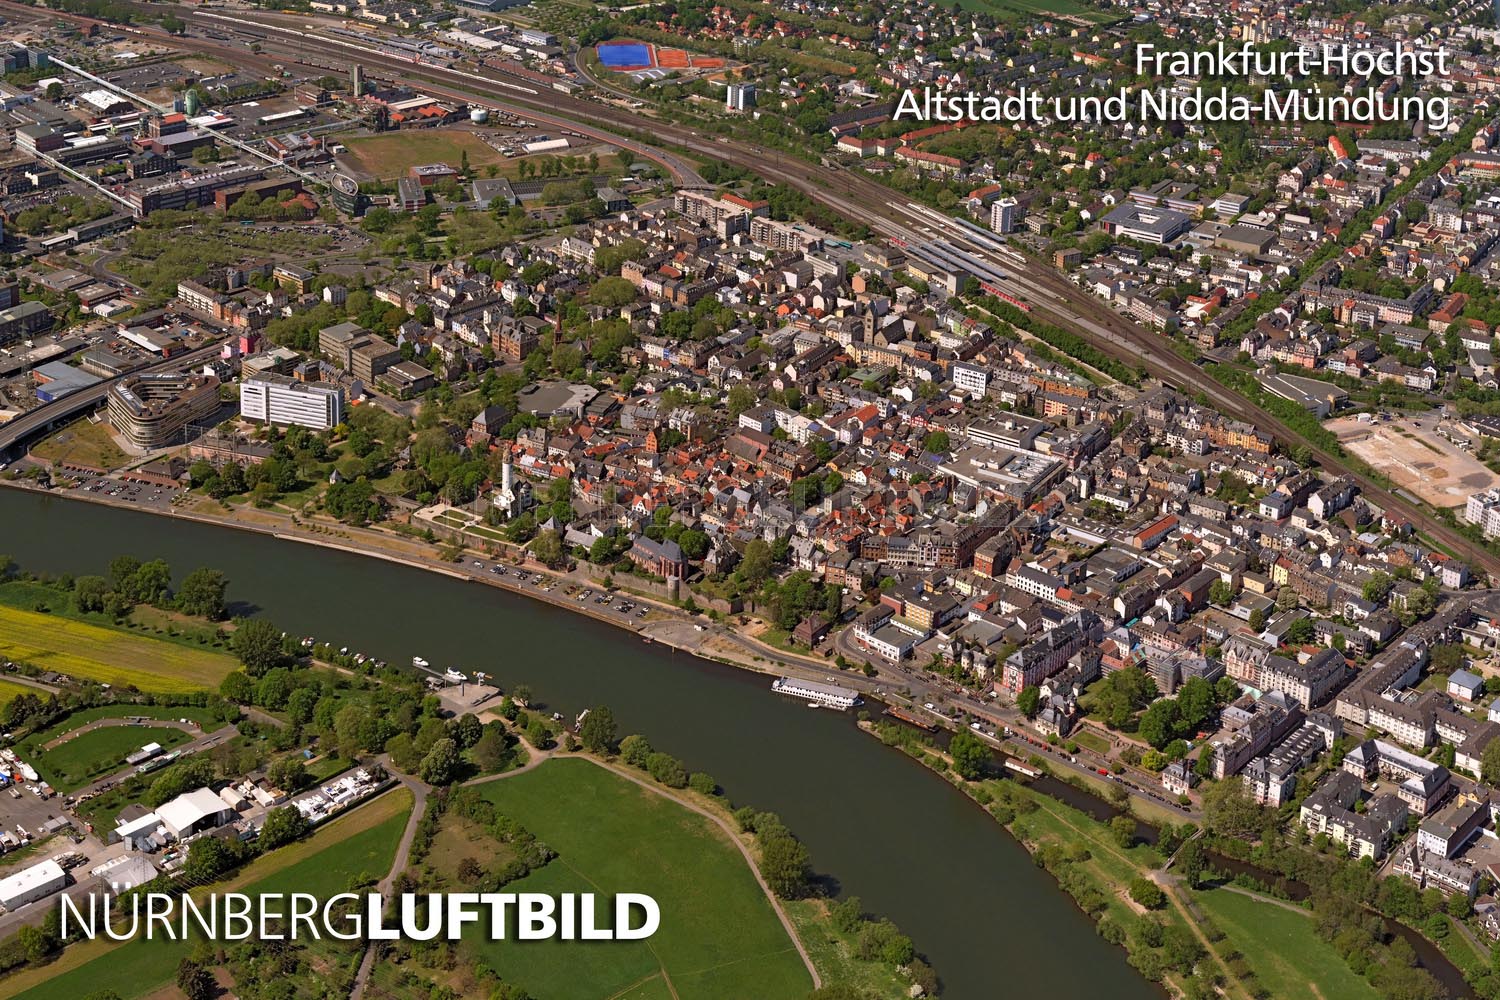 Frankfurt-Höchst, Altstadt und Nidda-Mündung